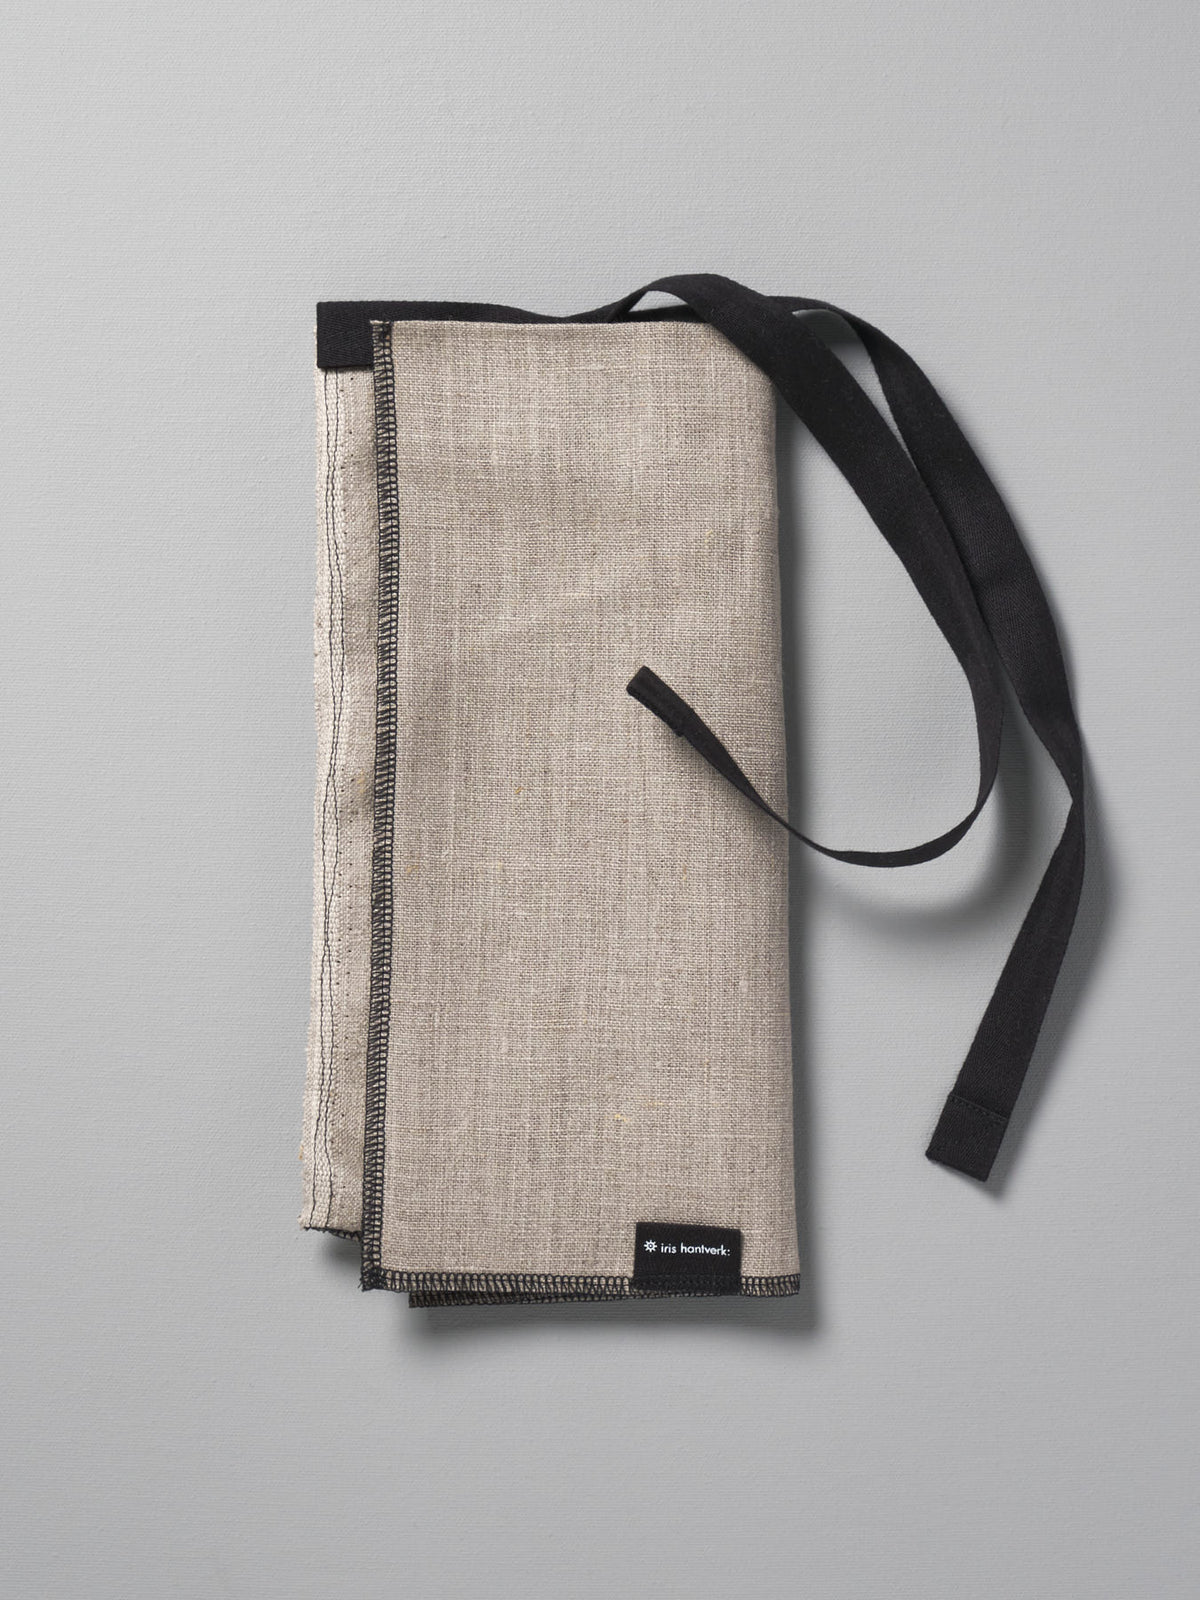 A Iris Hantverk Bread Bag – Linen with a black strap.